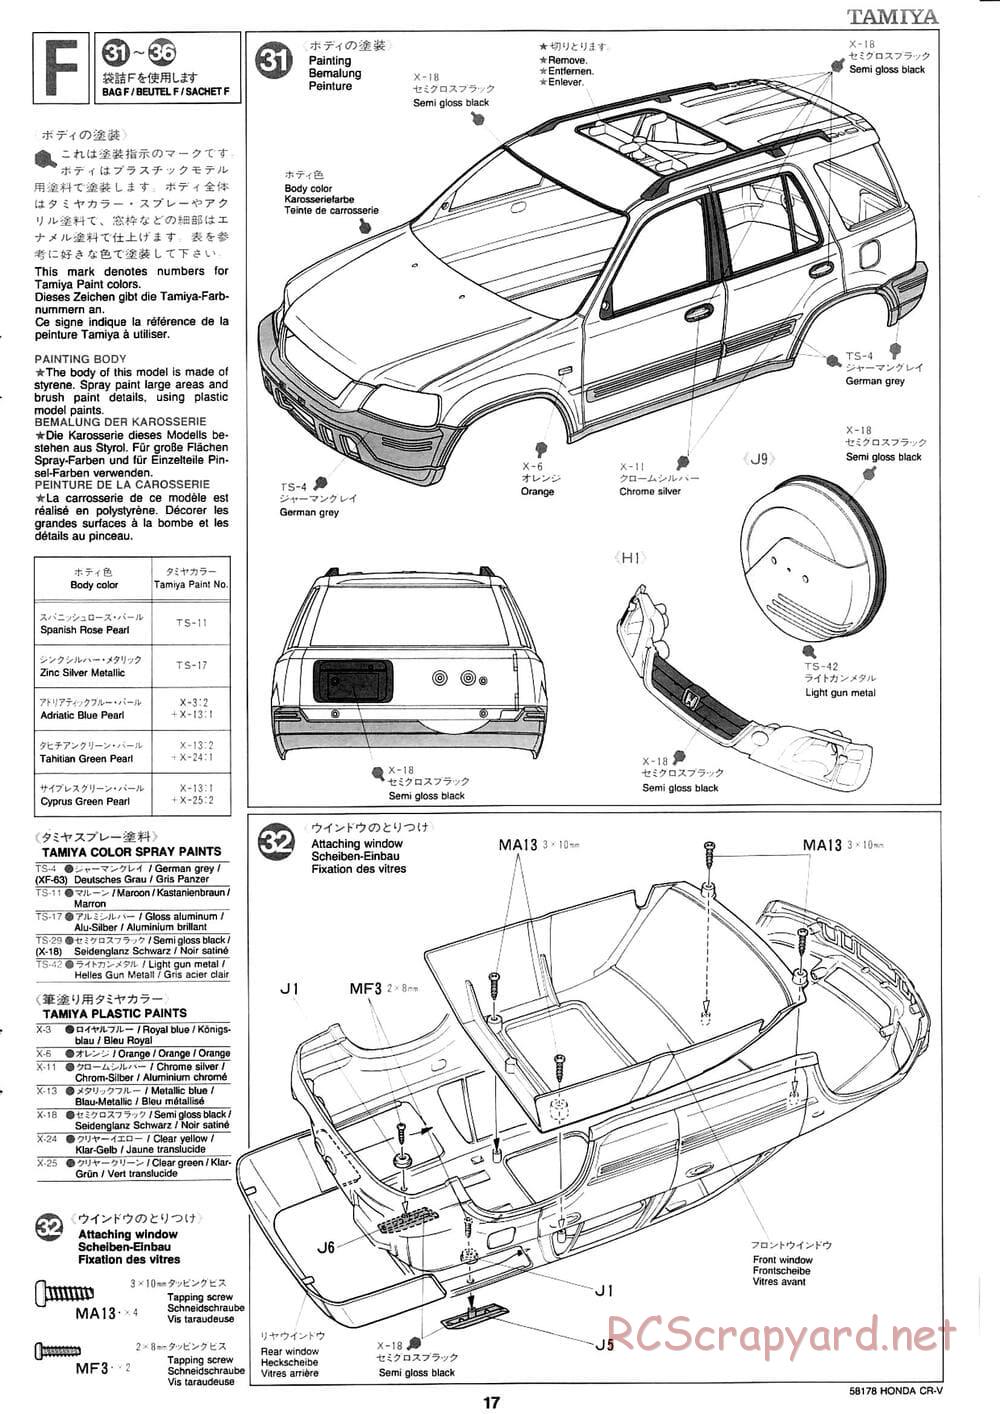 Tamiya - Honda CR-V - CC-01 Chassis - Manual - Page 17